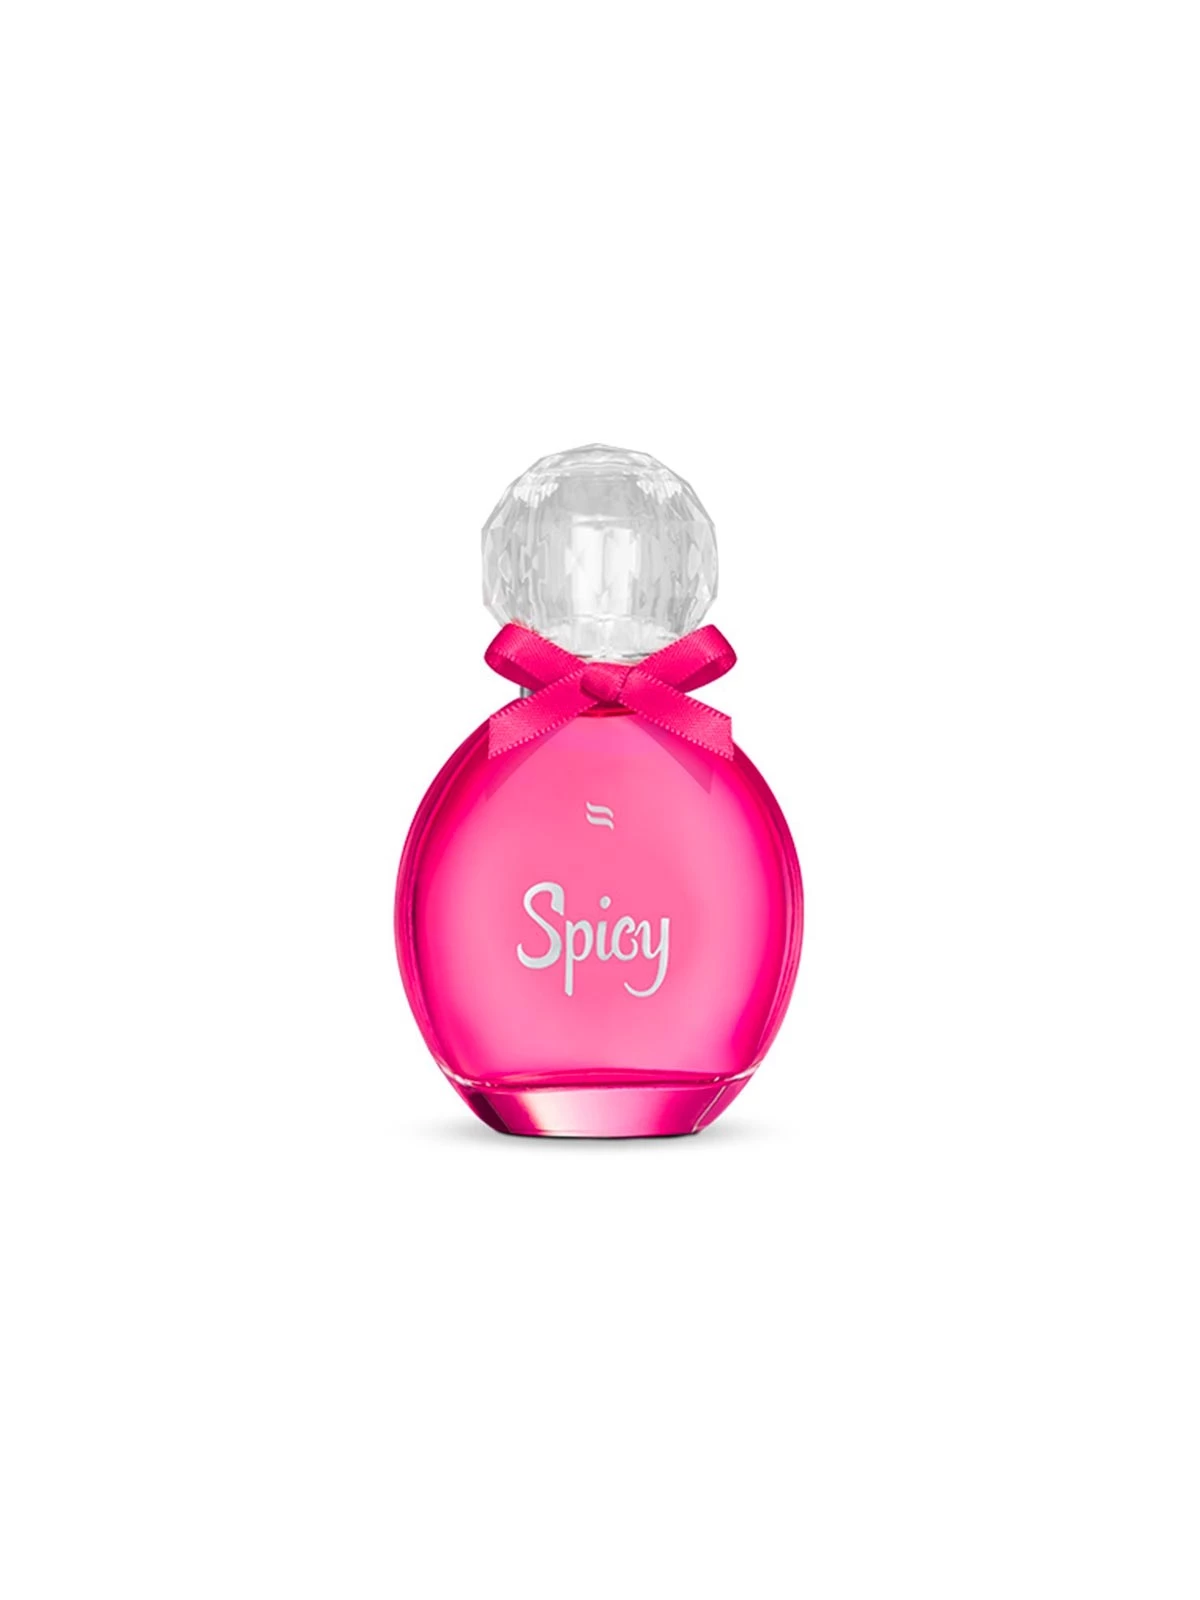 Obsessive - Pheromone Perfume Spicy 30 ml